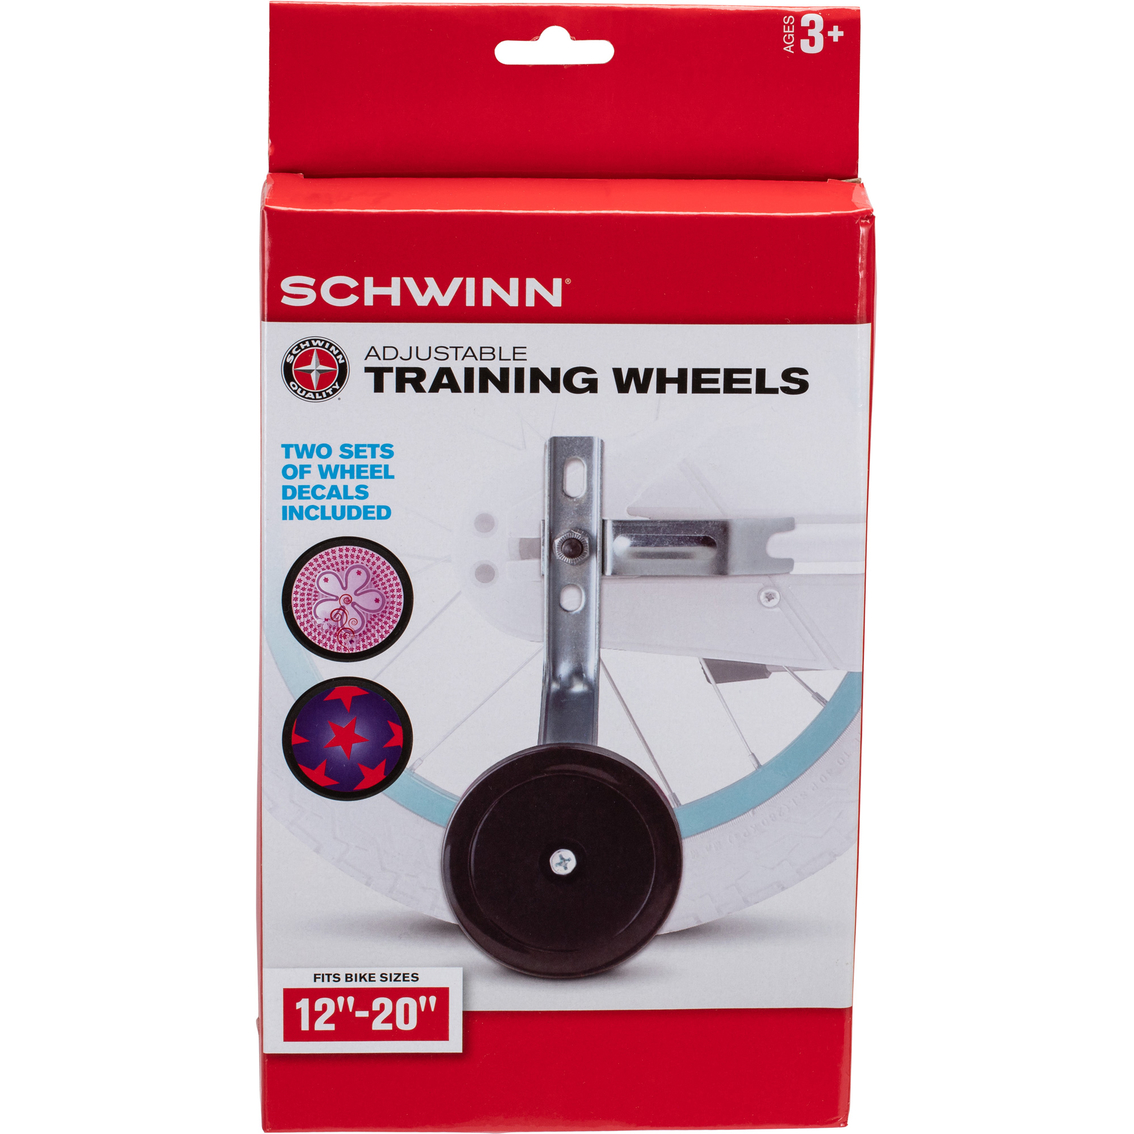 Schwinn Training Wheels, 12 in. - 20 in. - Image 4 of 4